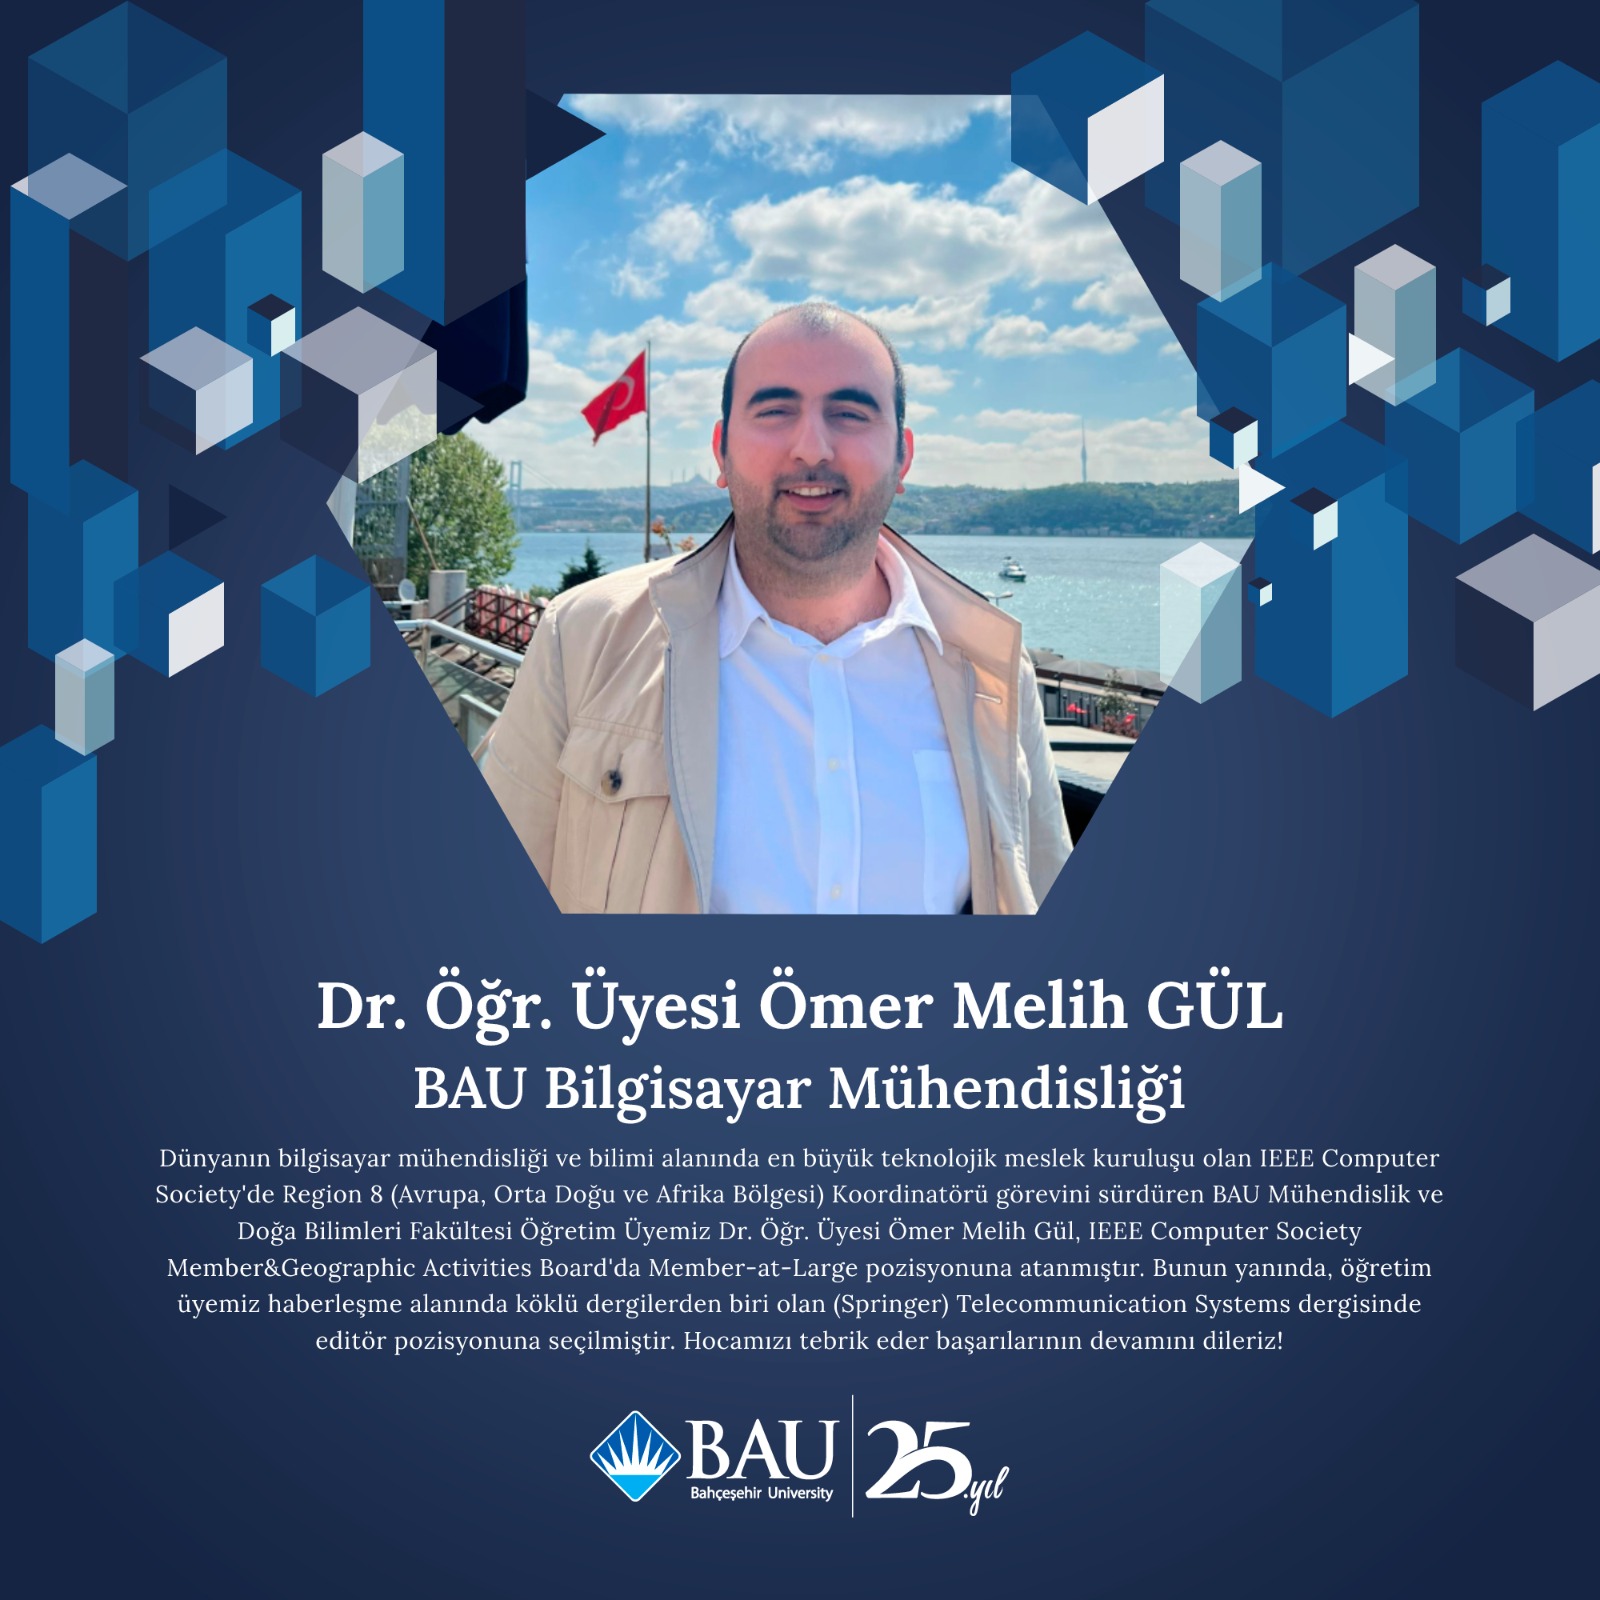 Dr. Öğr. Üyesi Ömer Melih Gül, IEEE Computer Society Member&Geographic Activities Board'da Member-at-Large pozisyonuna atanmıştır.